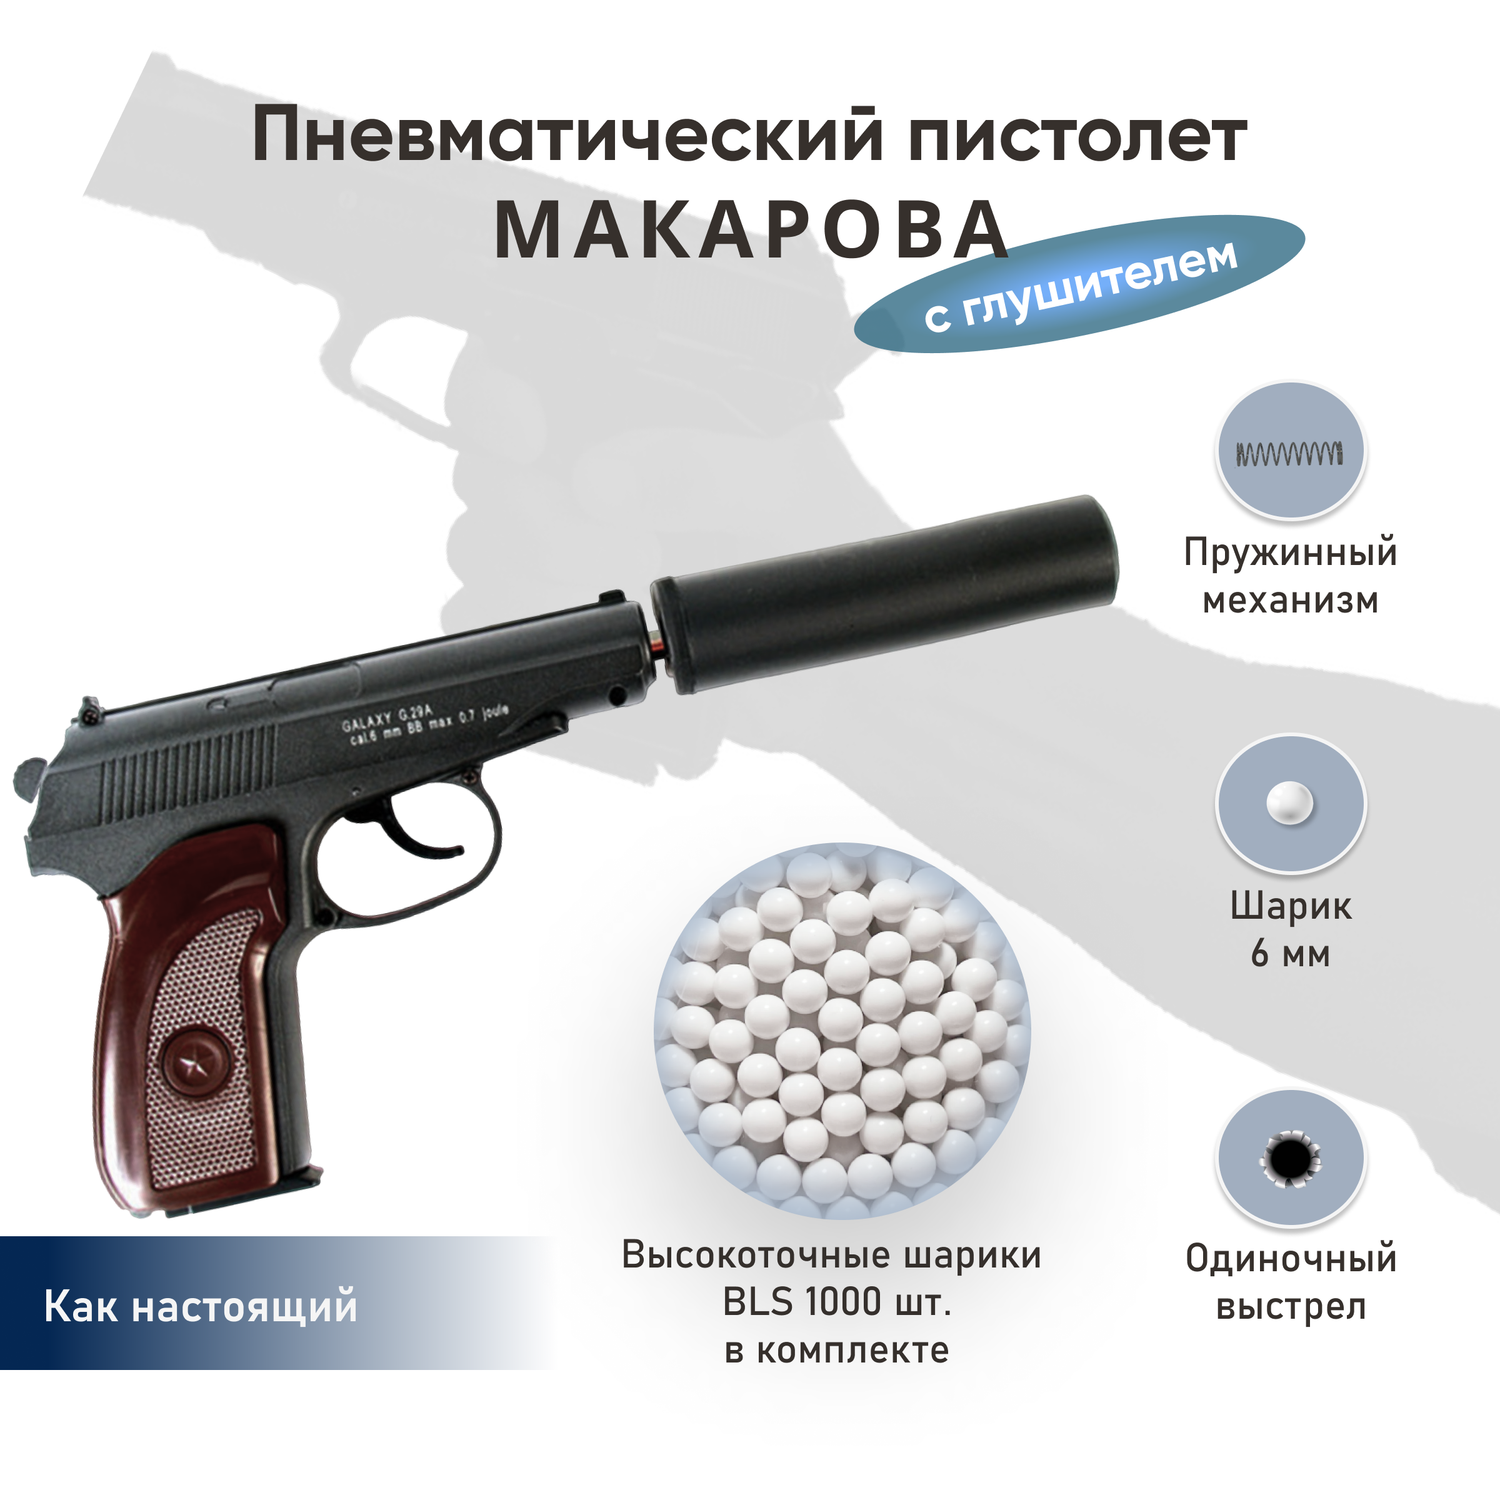 Пистолет Galaxy Макаров с глушителем шарики BLS 1000 шт. - фото 2